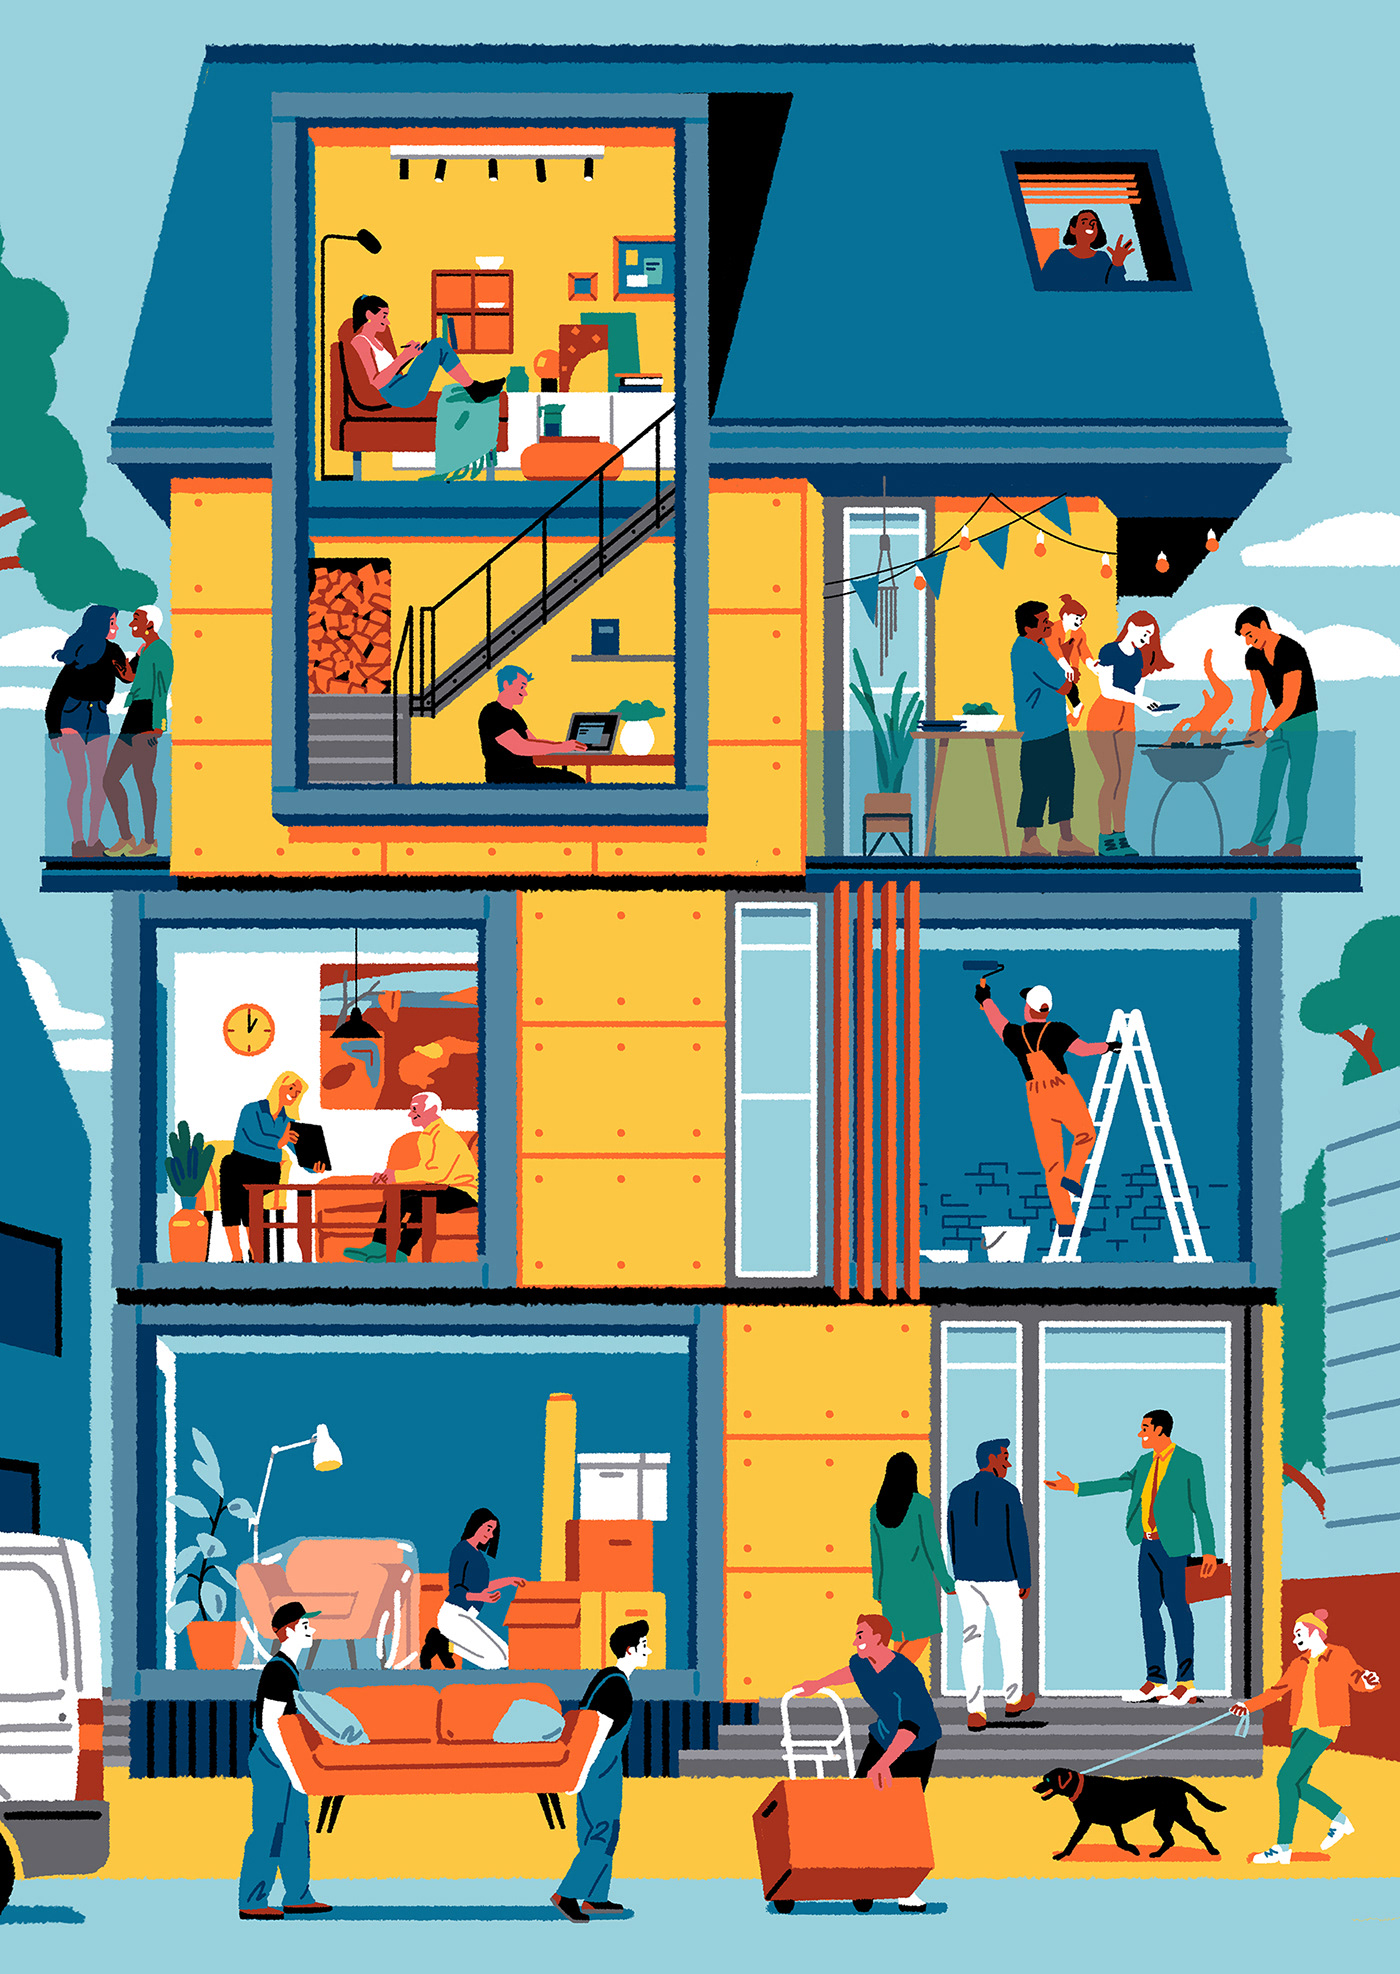 Illustrations idea #362: Perl. social housing illustration